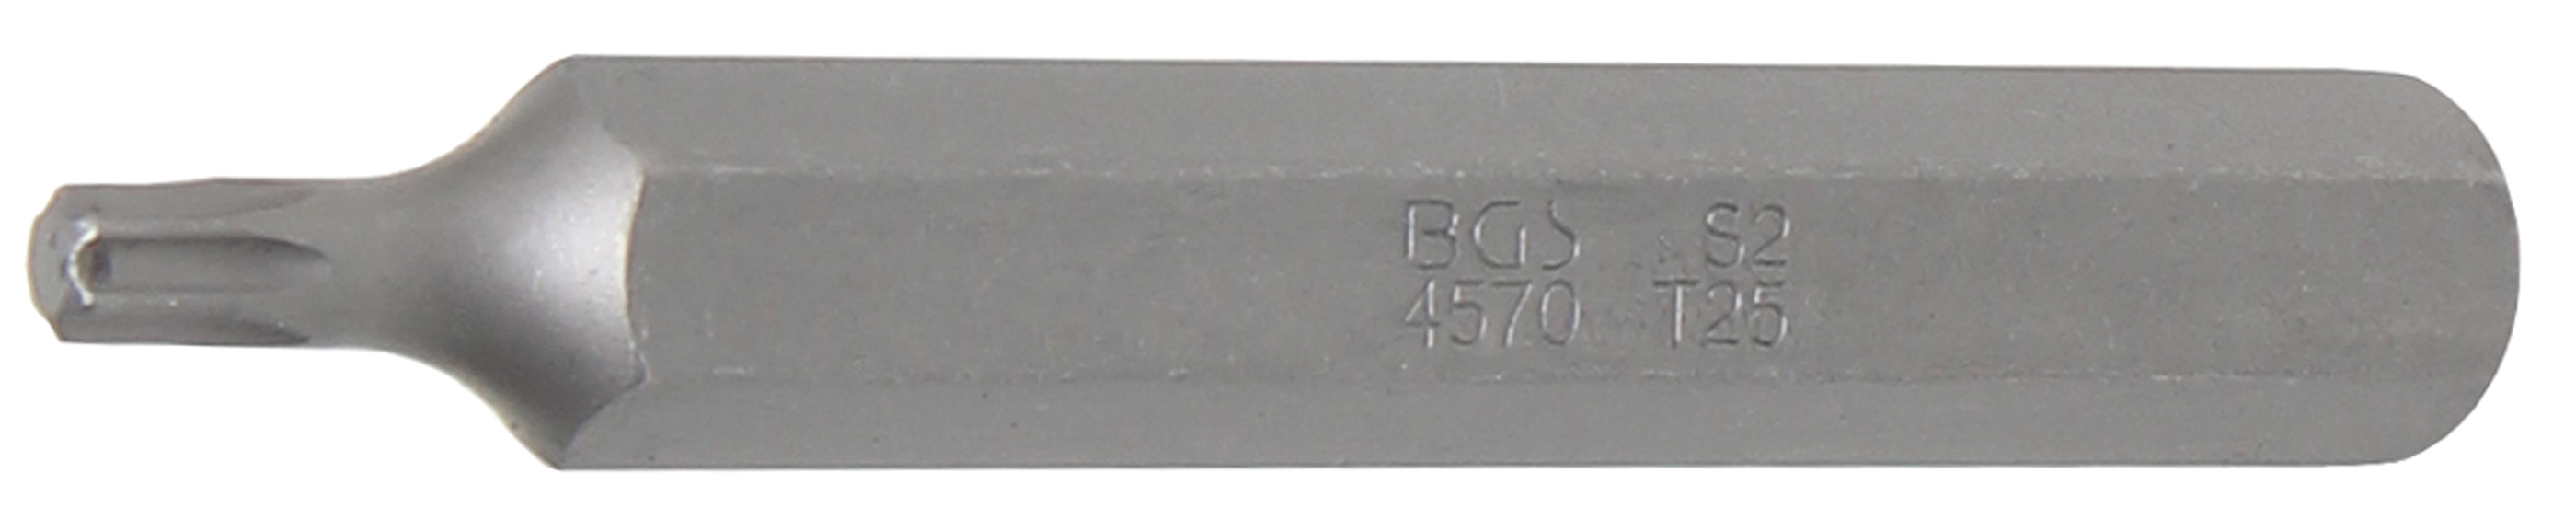 BGS 4570 Bit Torx T25, lungime 75 mm, antrenare 10mm (3/8")